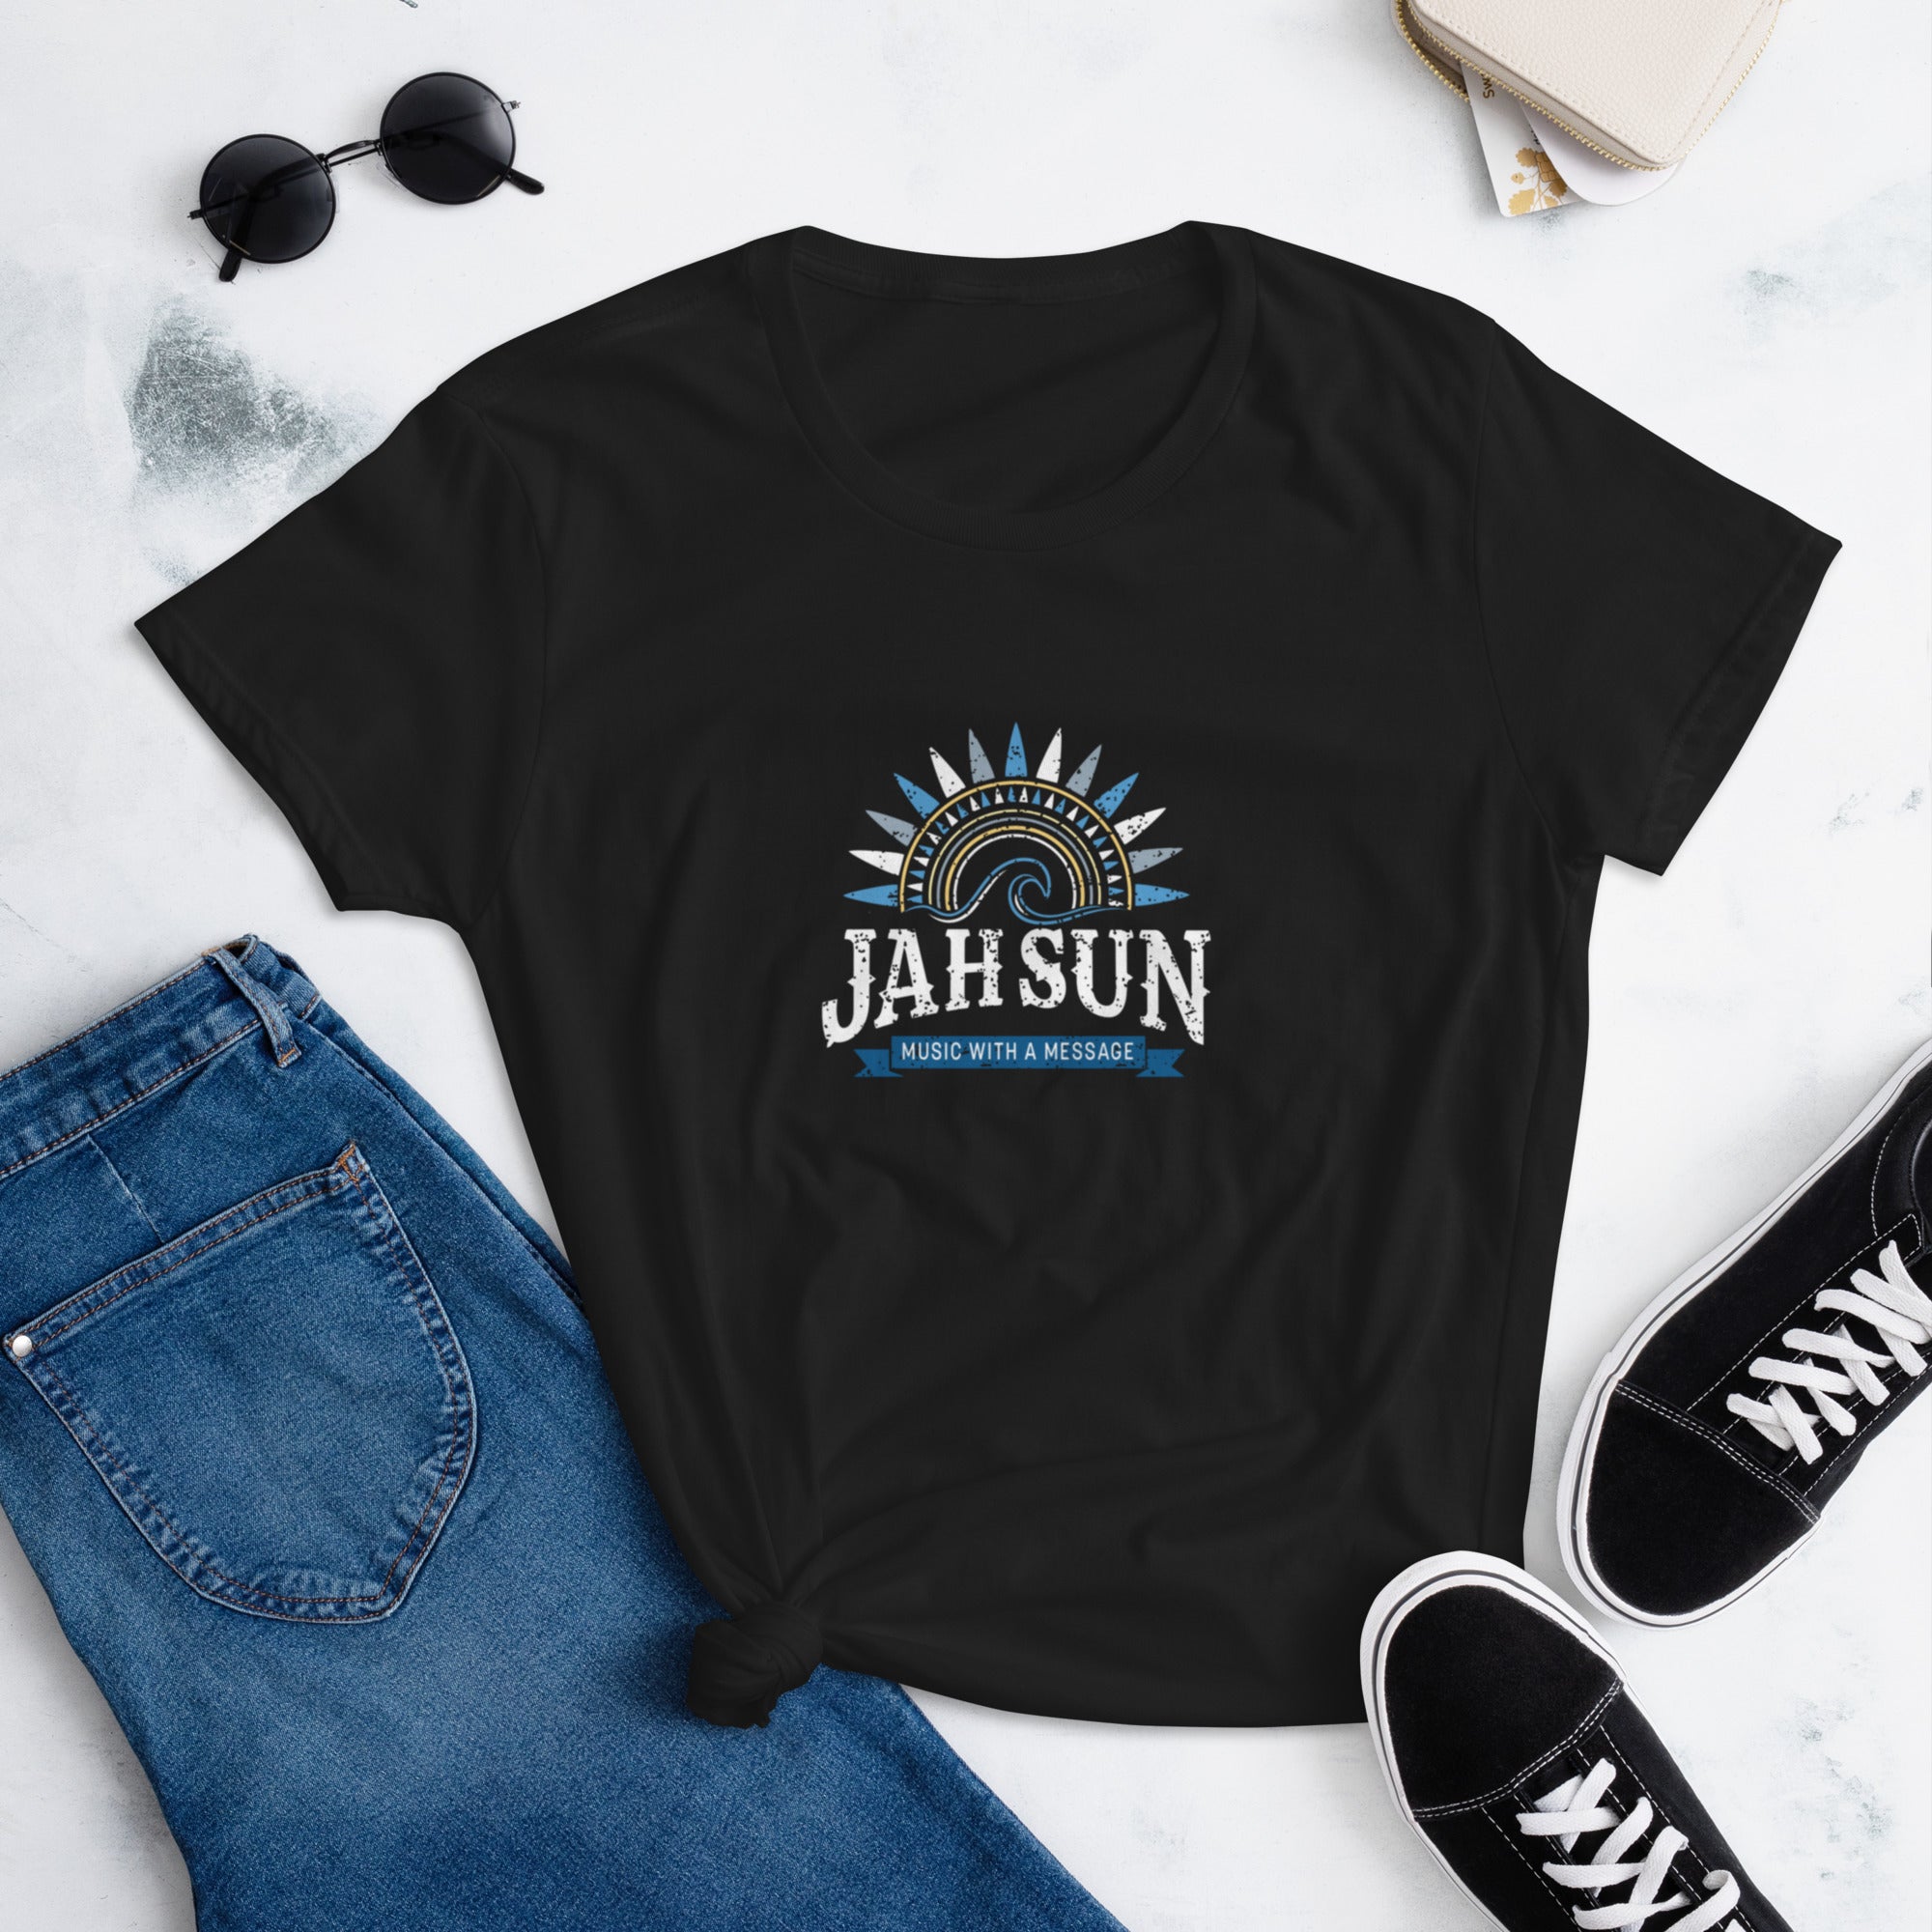 Jah Sun Women's short sleeve t-shirt